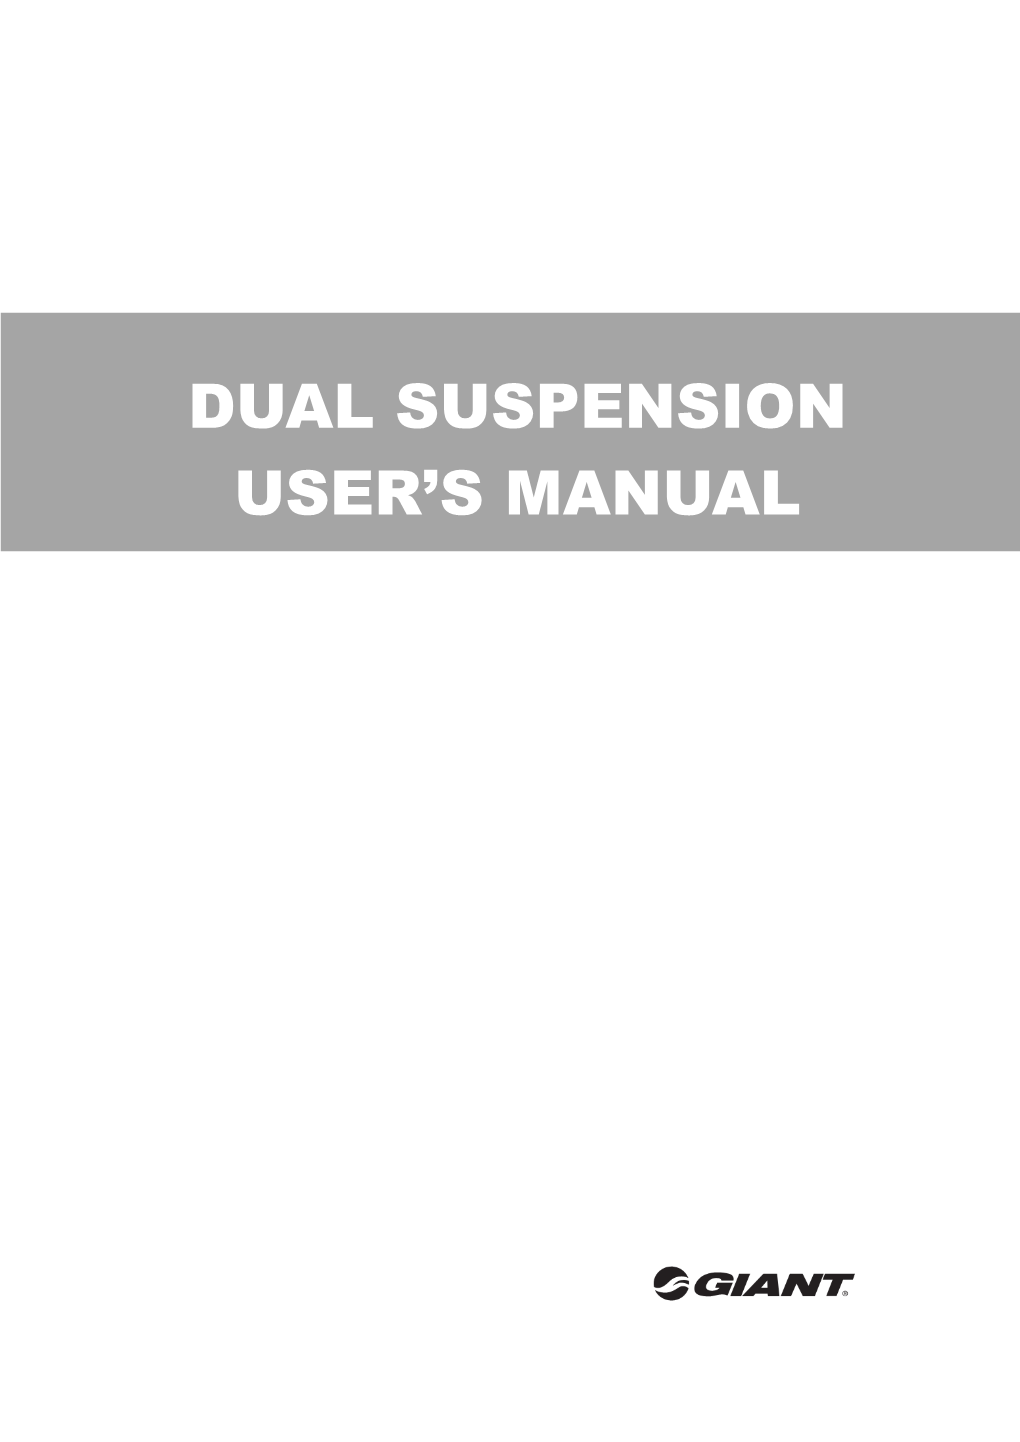 Dual Suspension User's Manual